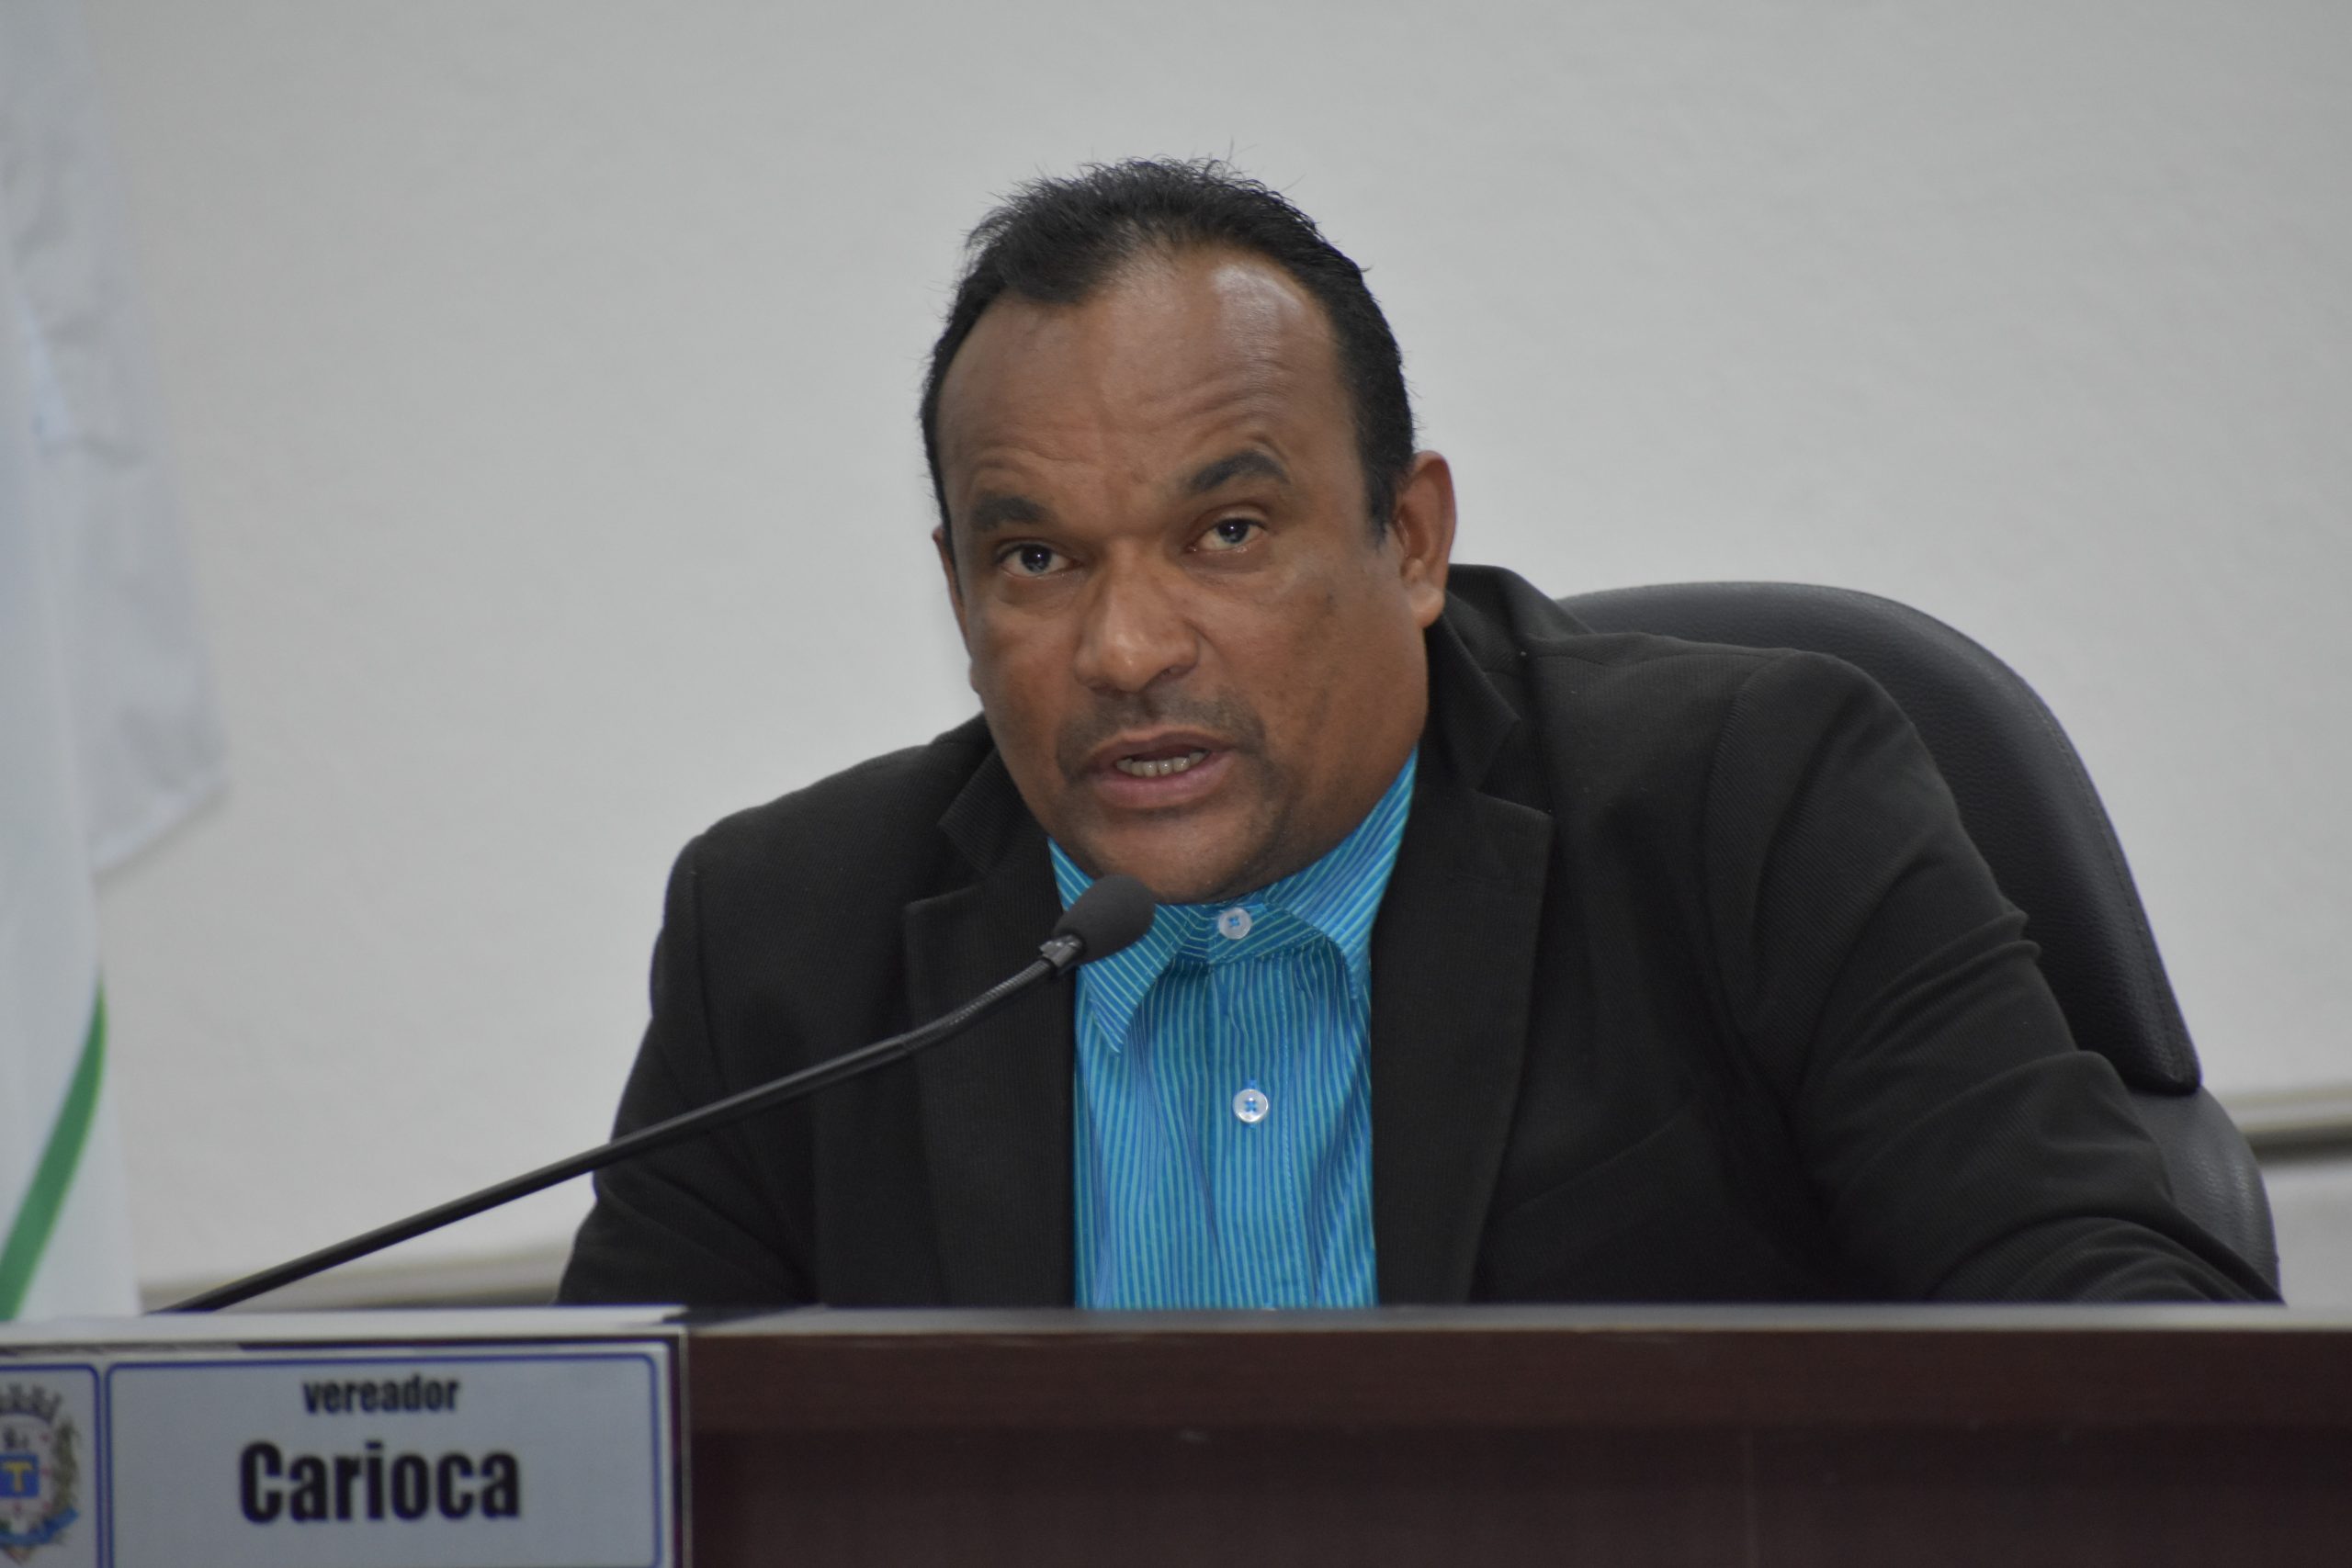 Despedida do vereador Carioca acontece na Câmara Municipal com restrições